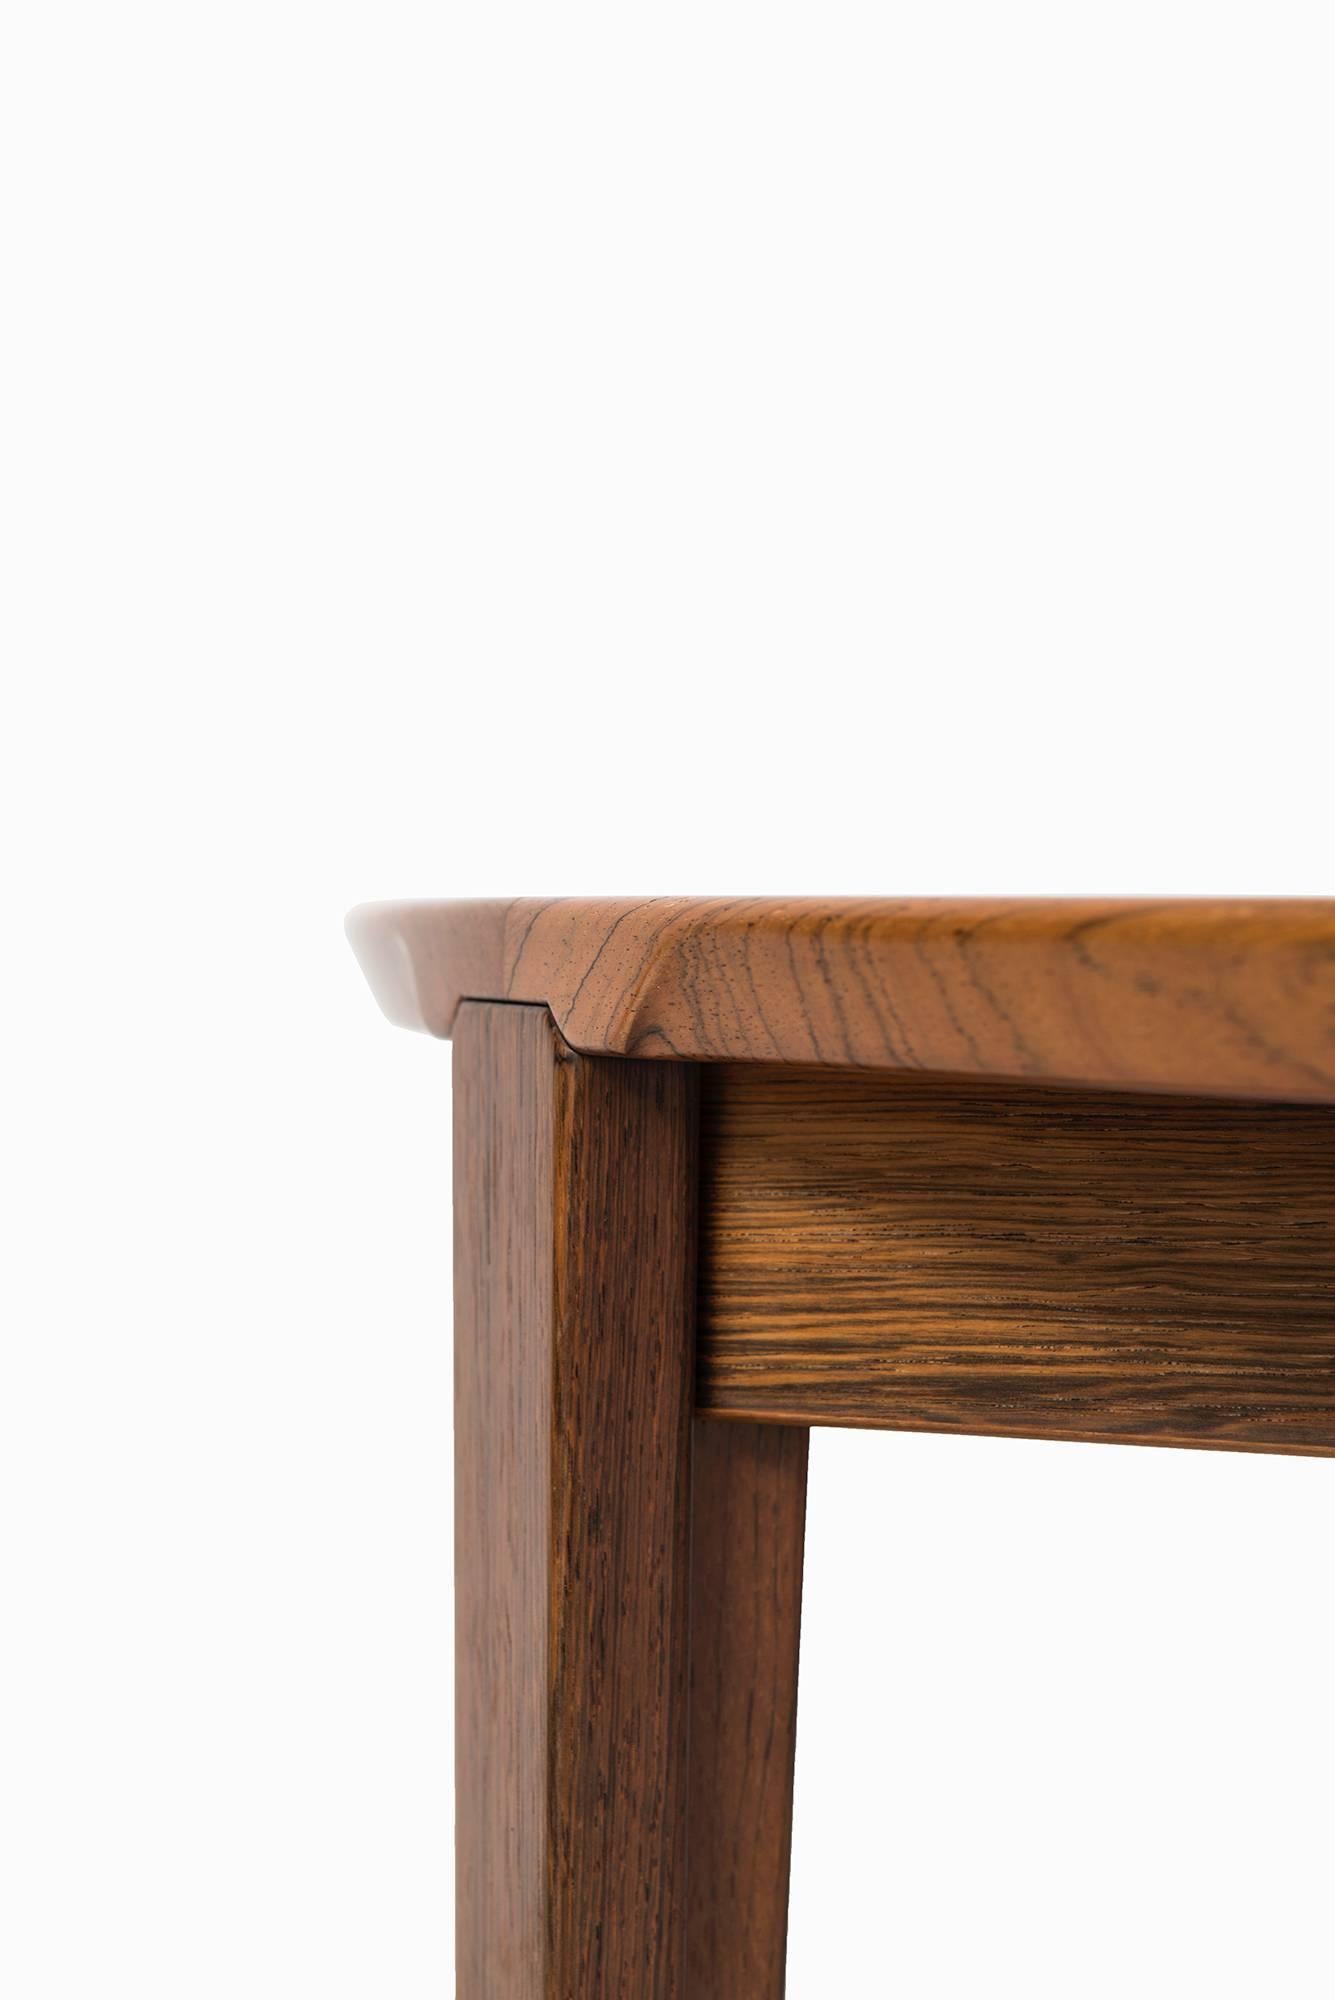 Rare dining table model 38 designed by Henry Rosengren Hansen. Produced by Brande Møbelindustri in Denmark.